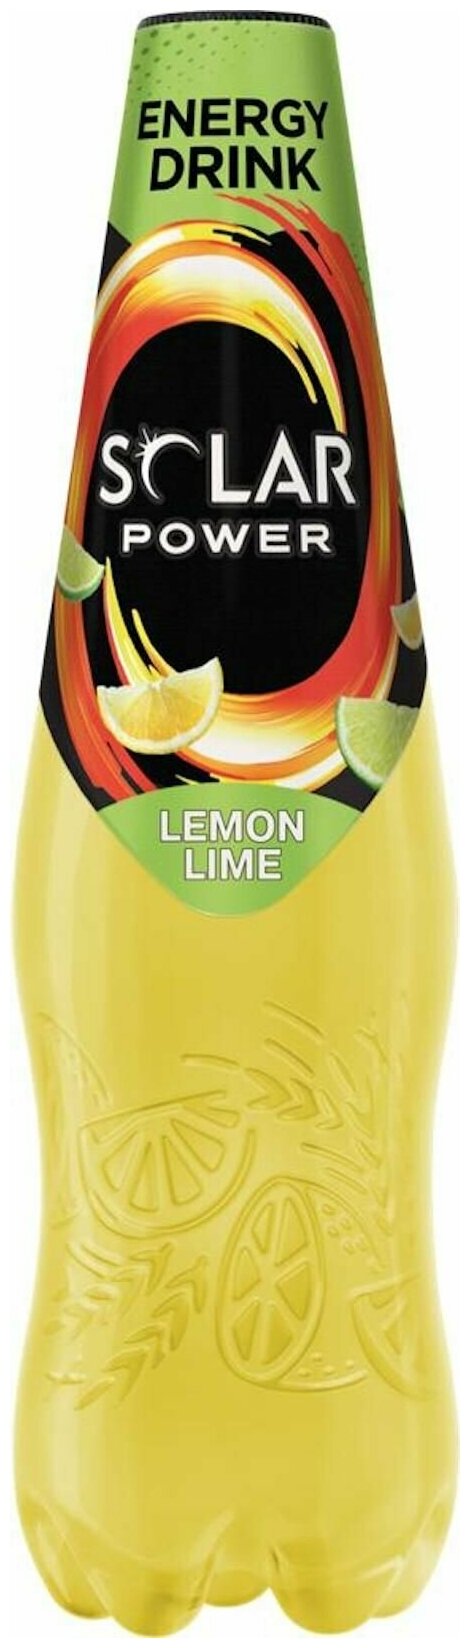 Энергетический напиток Solar Power (Солар Пауэр) Lemon-Lime со вкусом и ароматом лимона 0,48 л х 24 бутылки